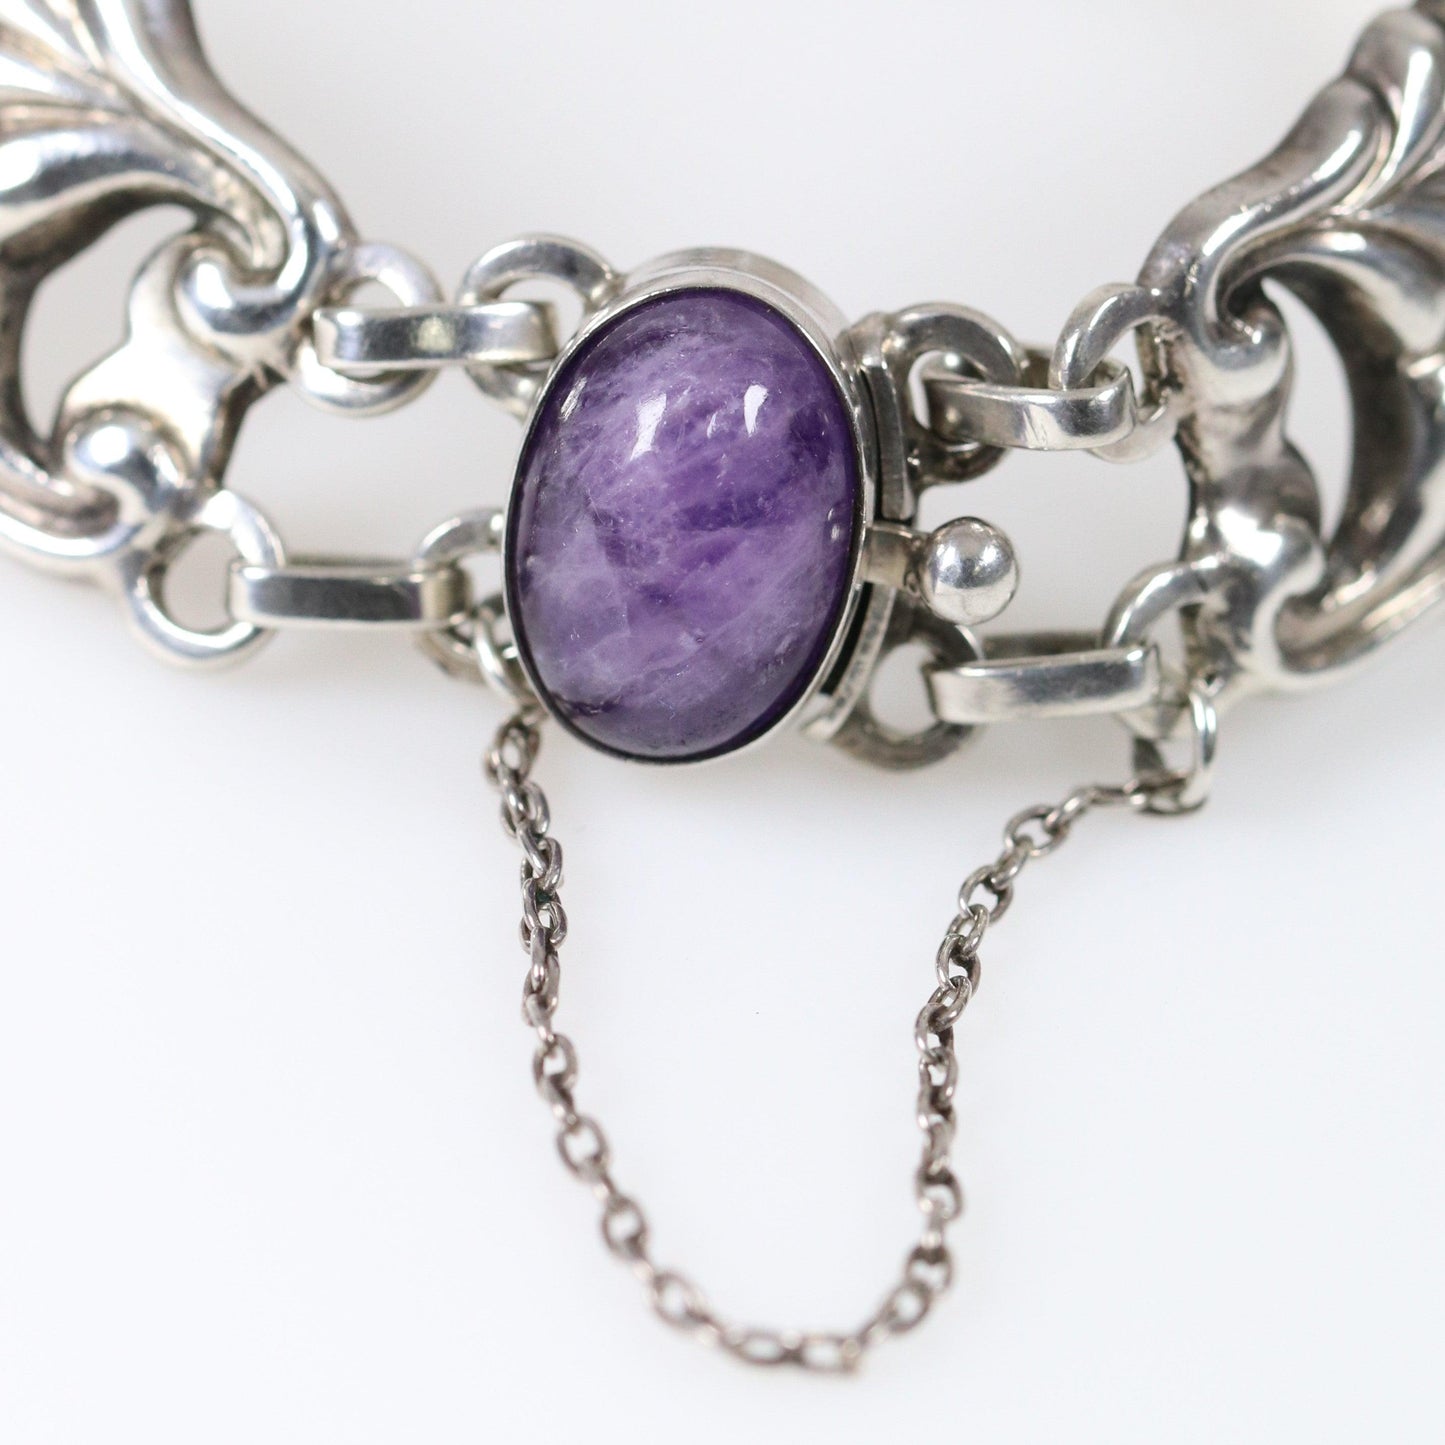 Antique Georg Jensen Jewelry | Rare Amethyst Bracelet 5 - Carmel Fine Silver Jewelry